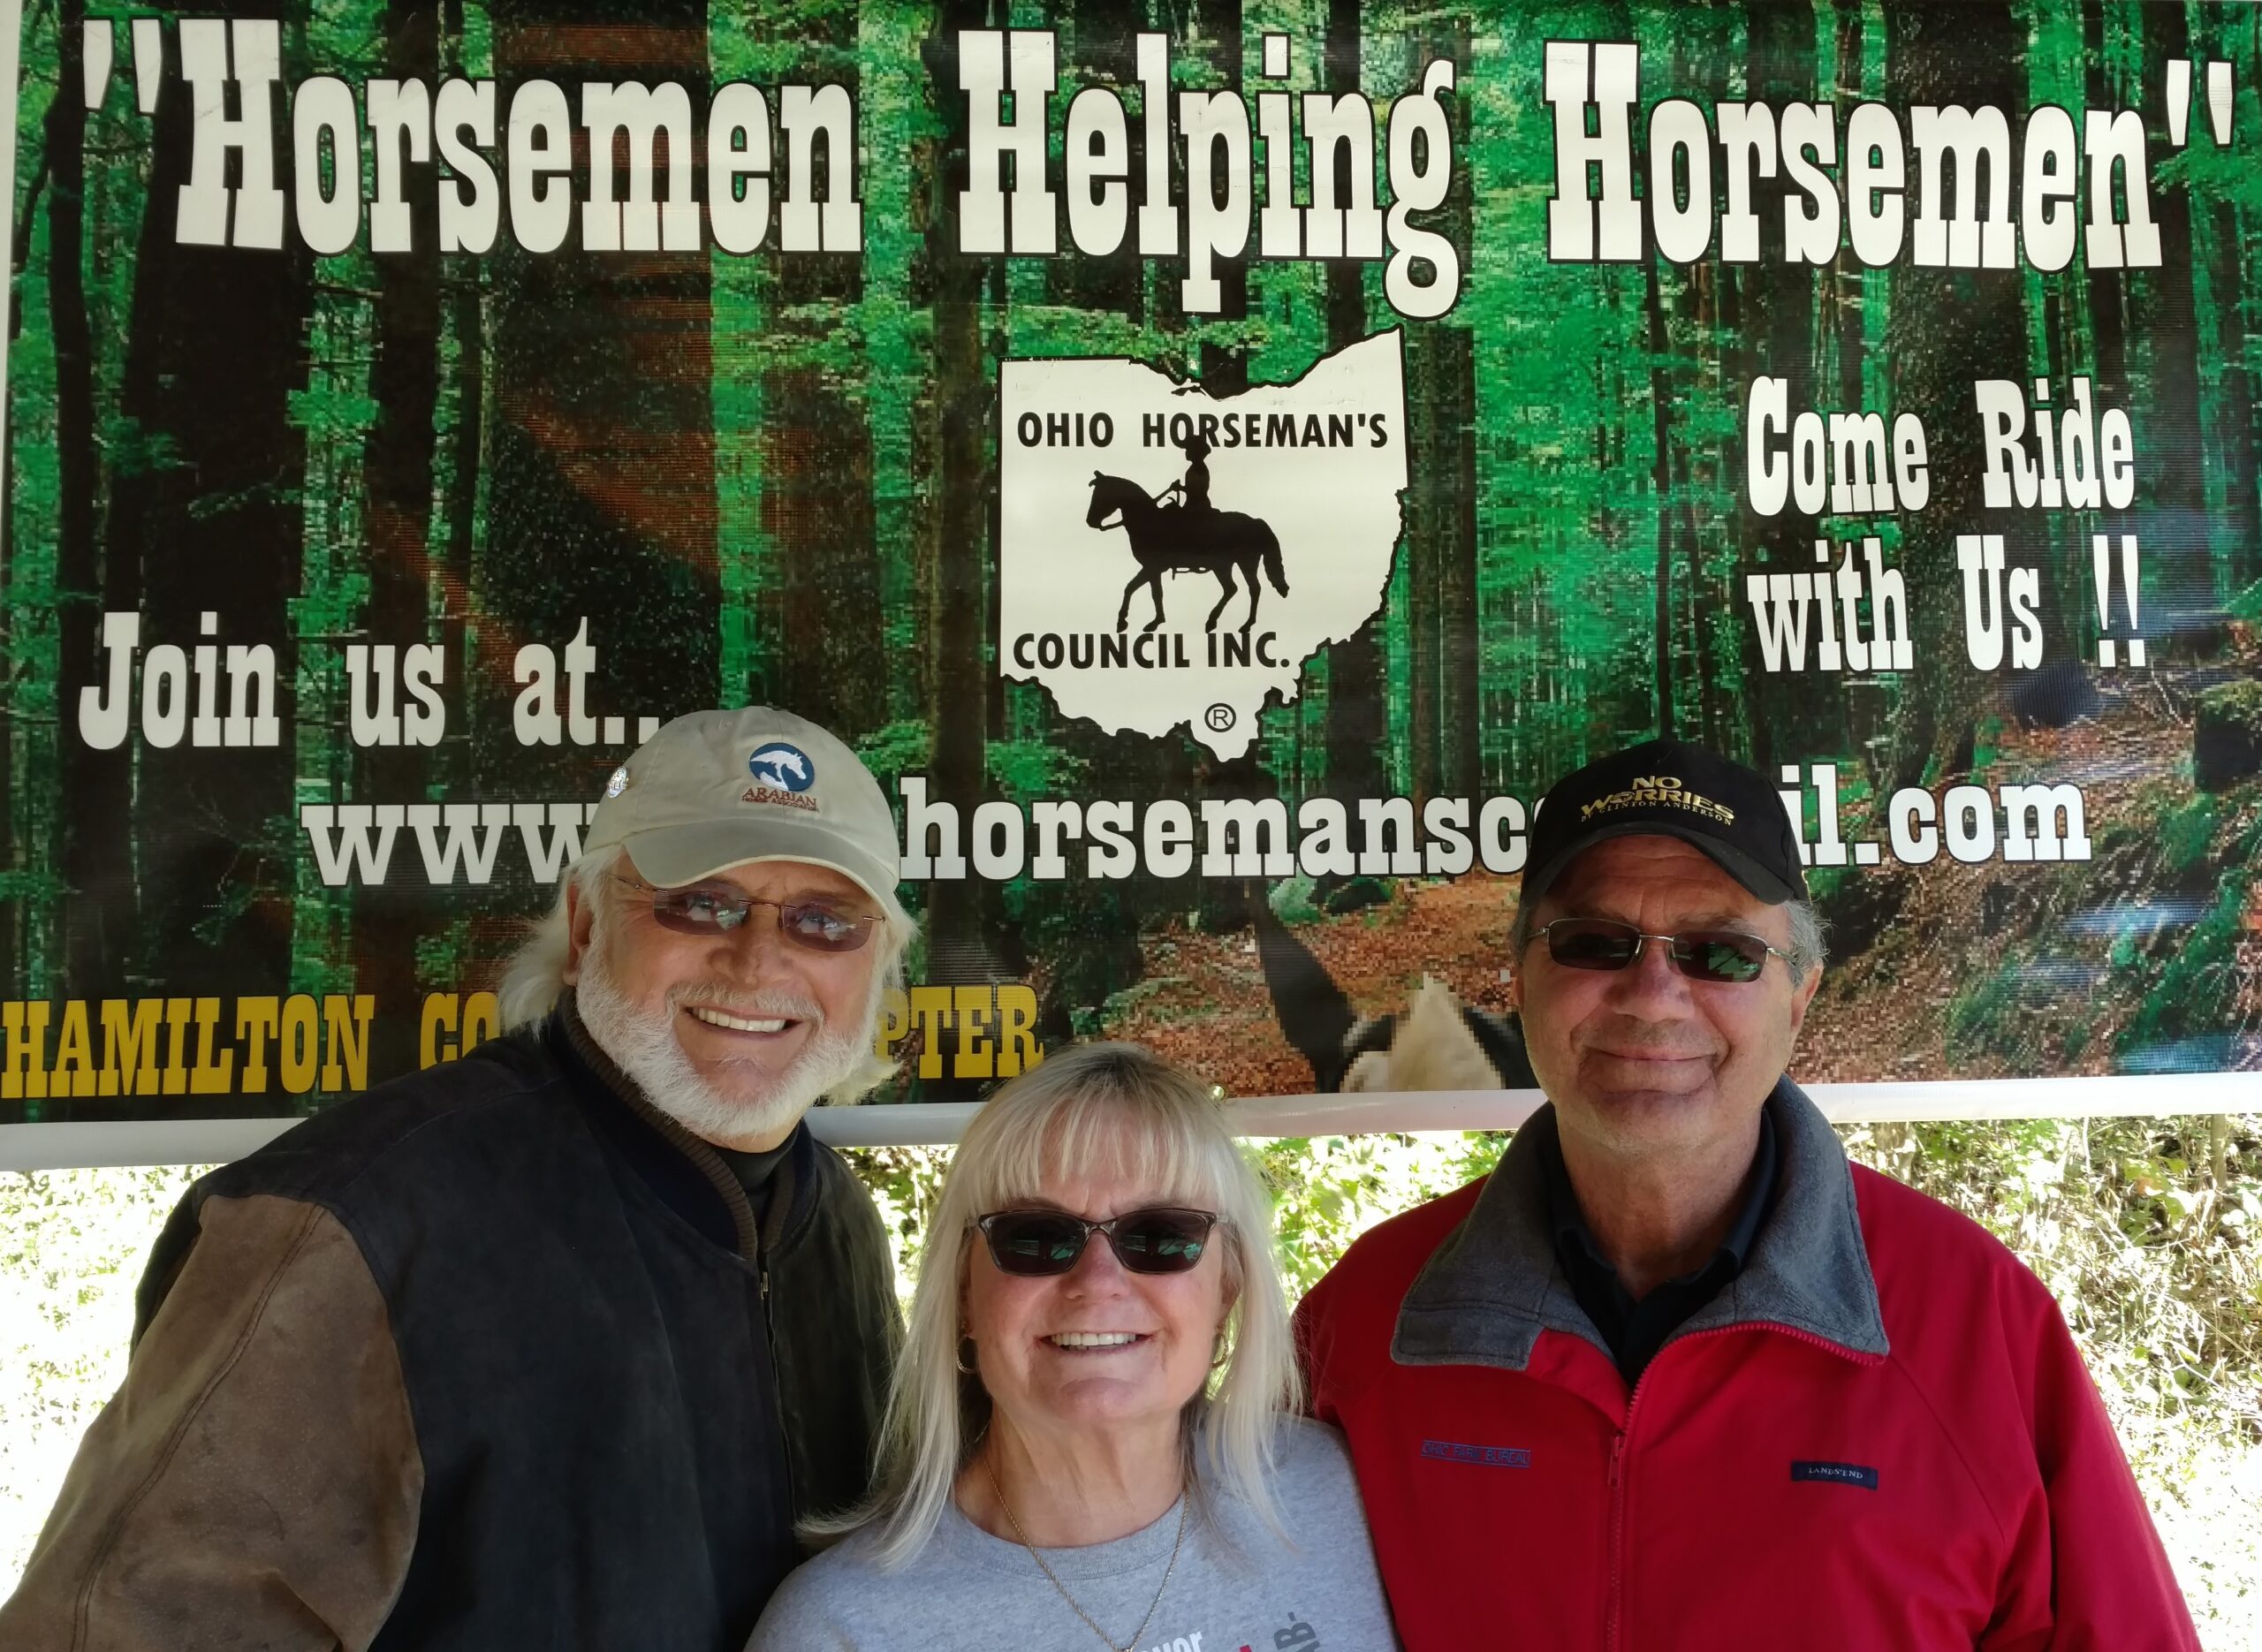 Hamilton County Chapter Ohio Horseman’s Council